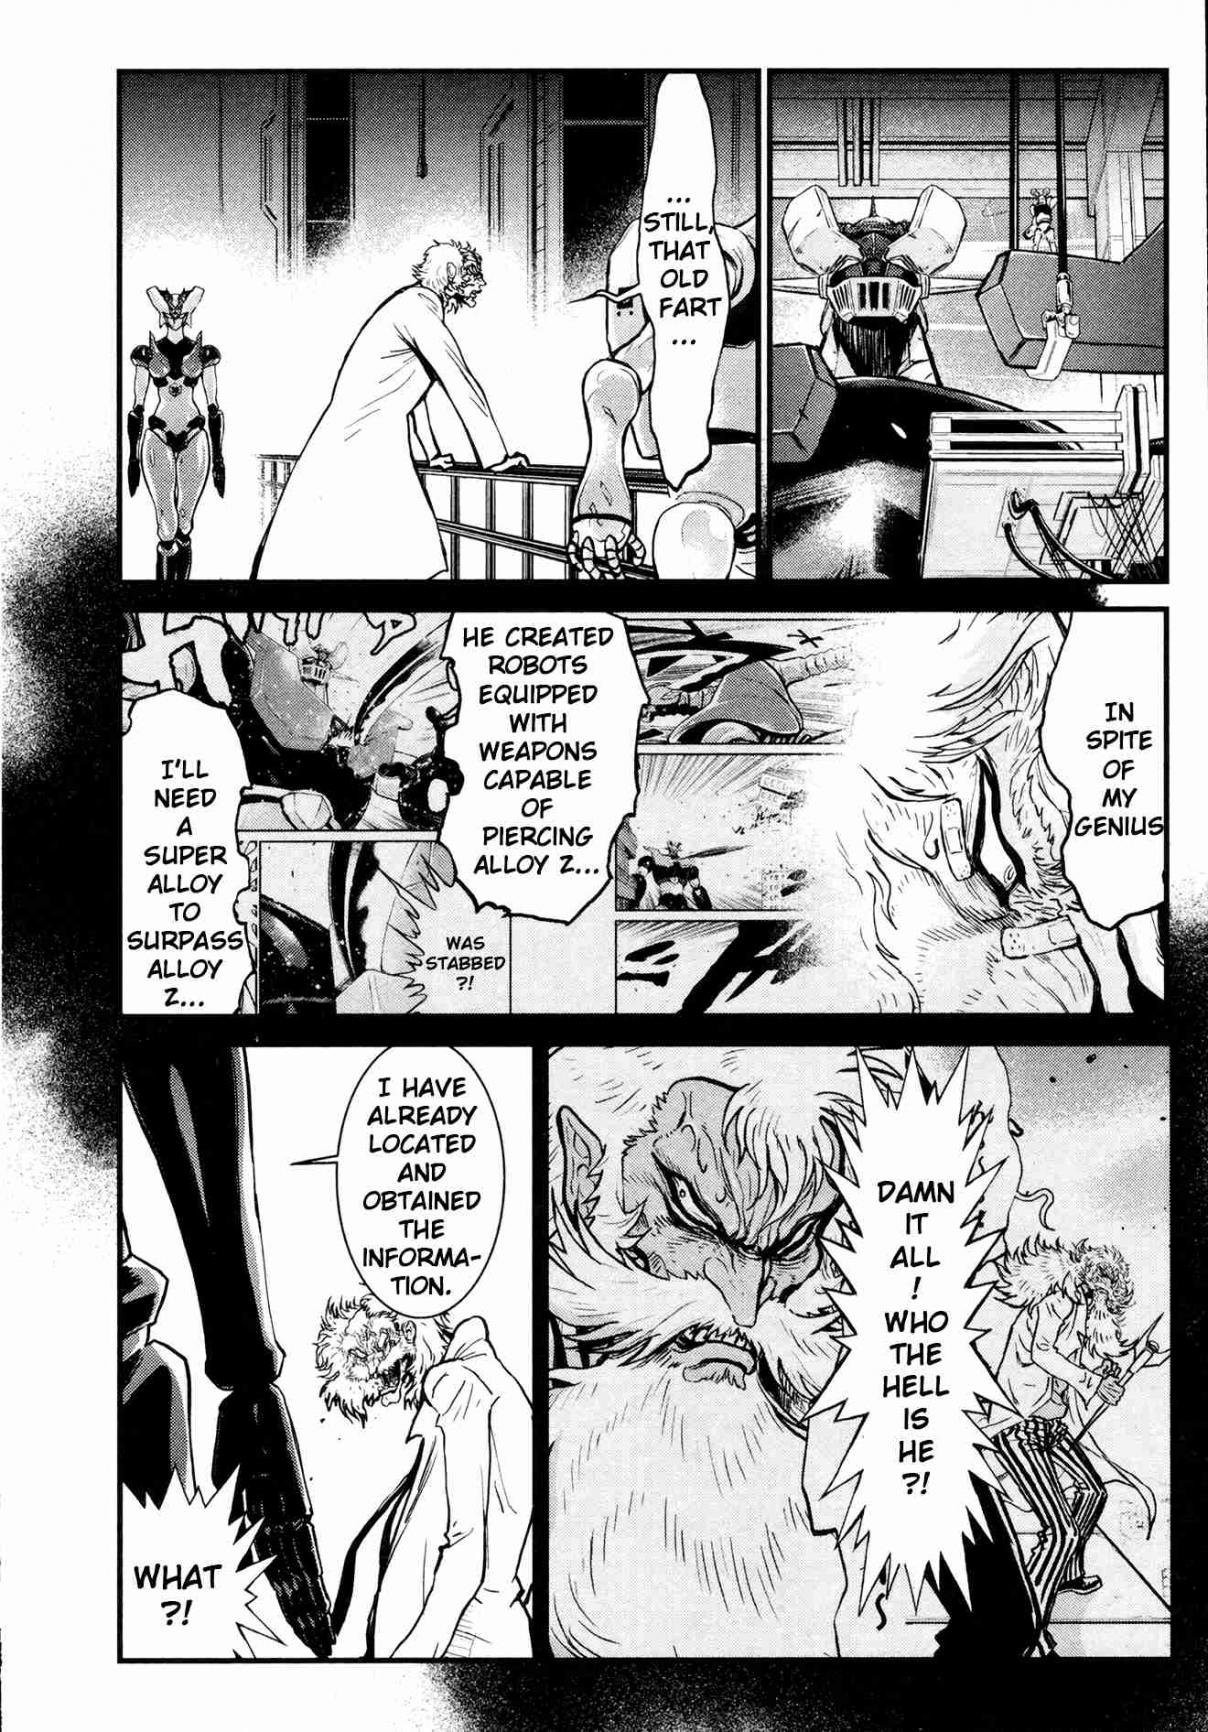 Shin Mazinger Zero Vol. 6 Ch. 26 Two Geniuses Alike in Pride